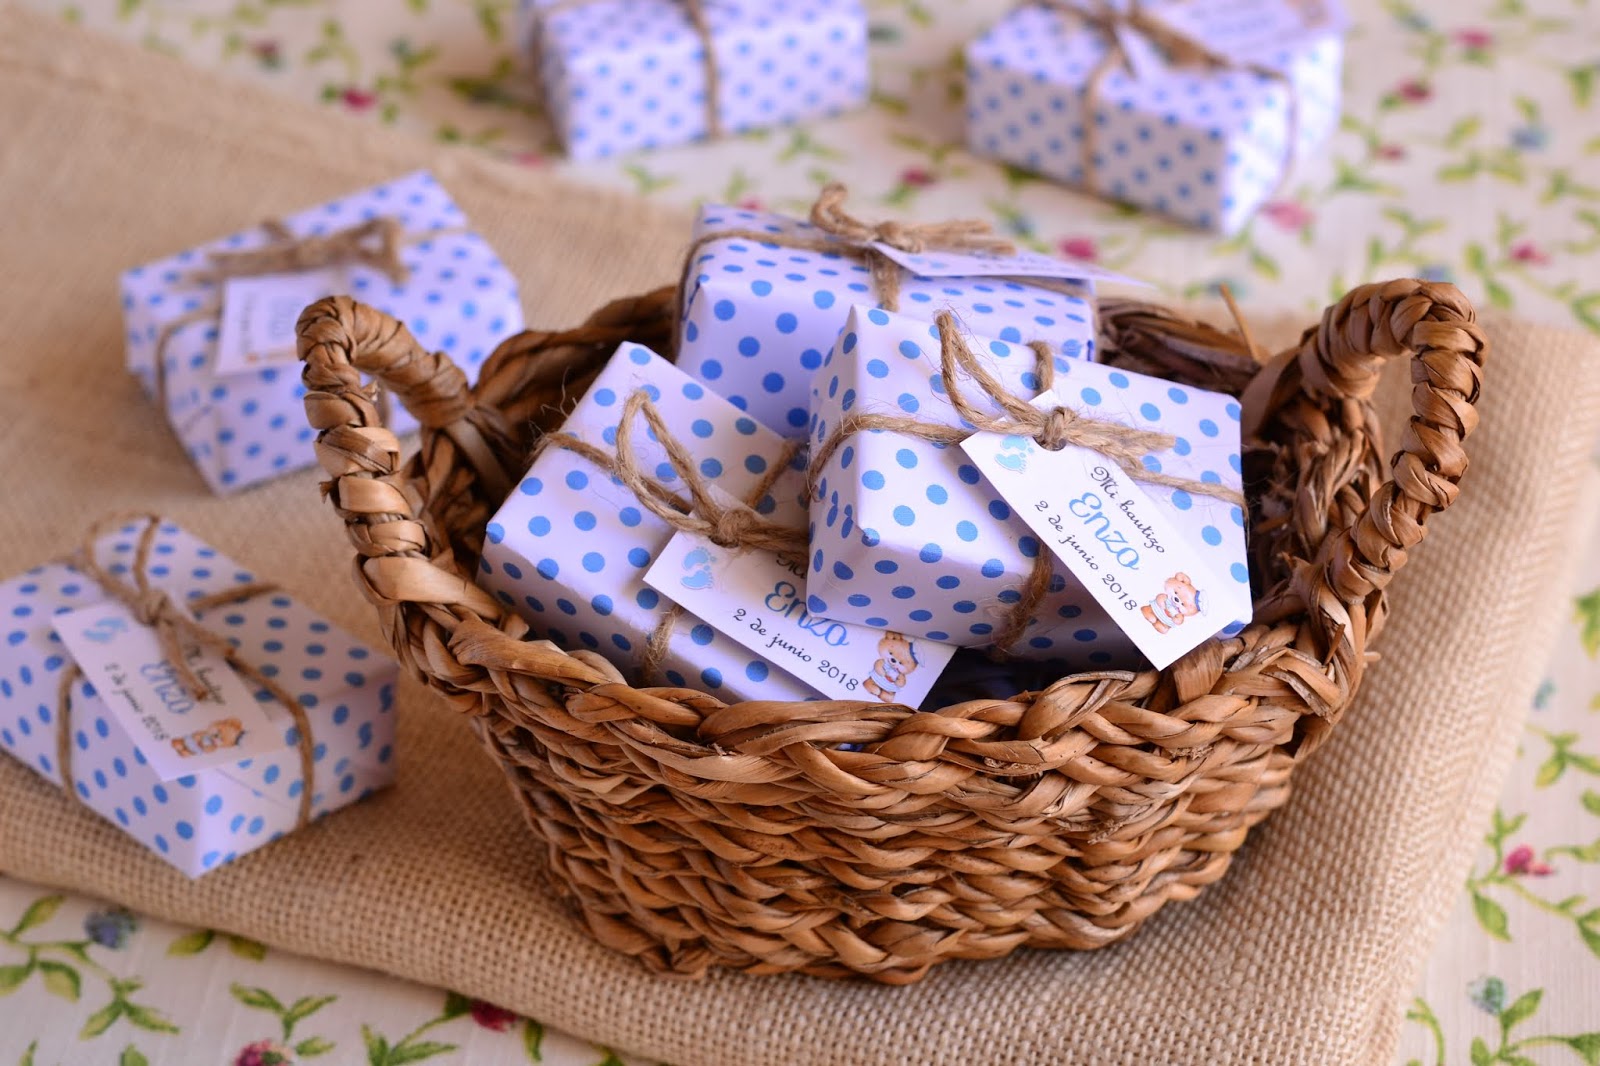 El Jabon Casero - Recuerdos para invitados de bautizo de niño, jabones y  saquitos perfumados en color azul y blanco; colección cuadritos vichy.    #jabonpersonalizado